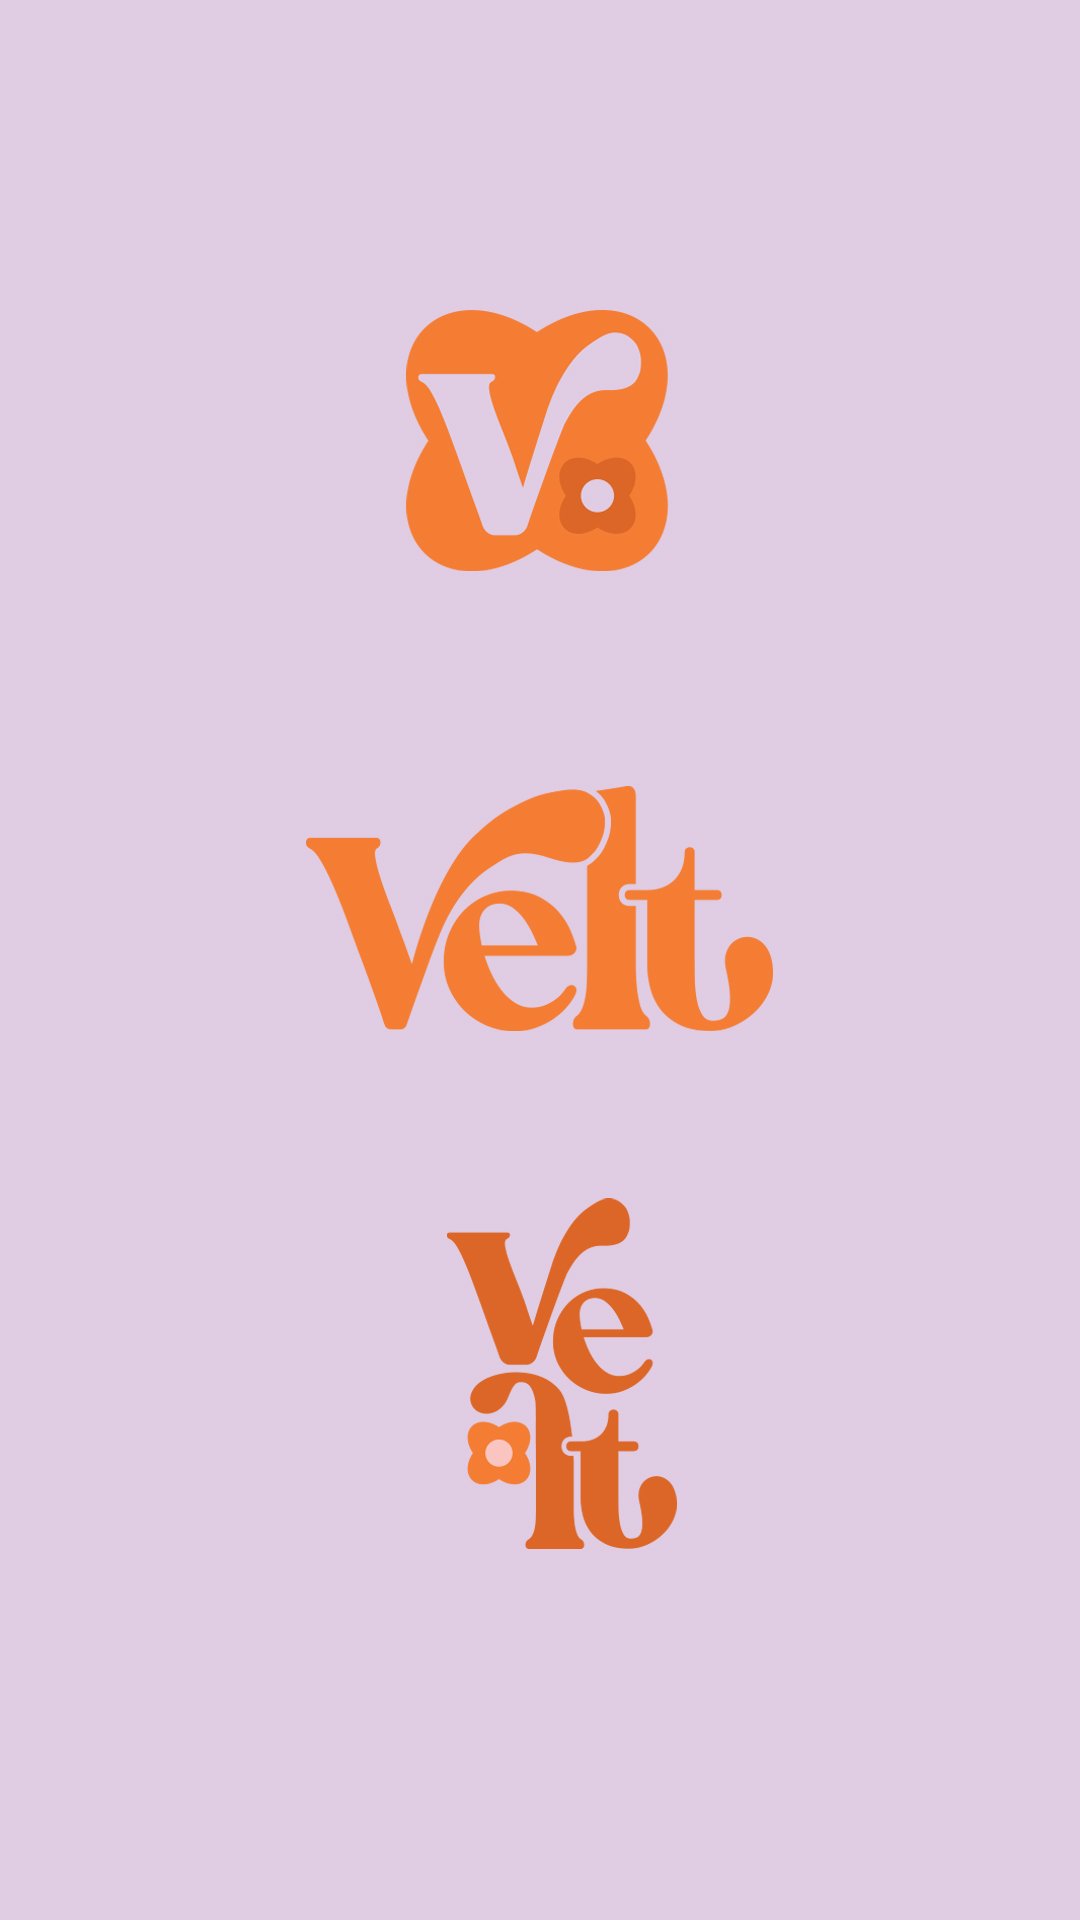 Velt-beauty logo design-3.jpg